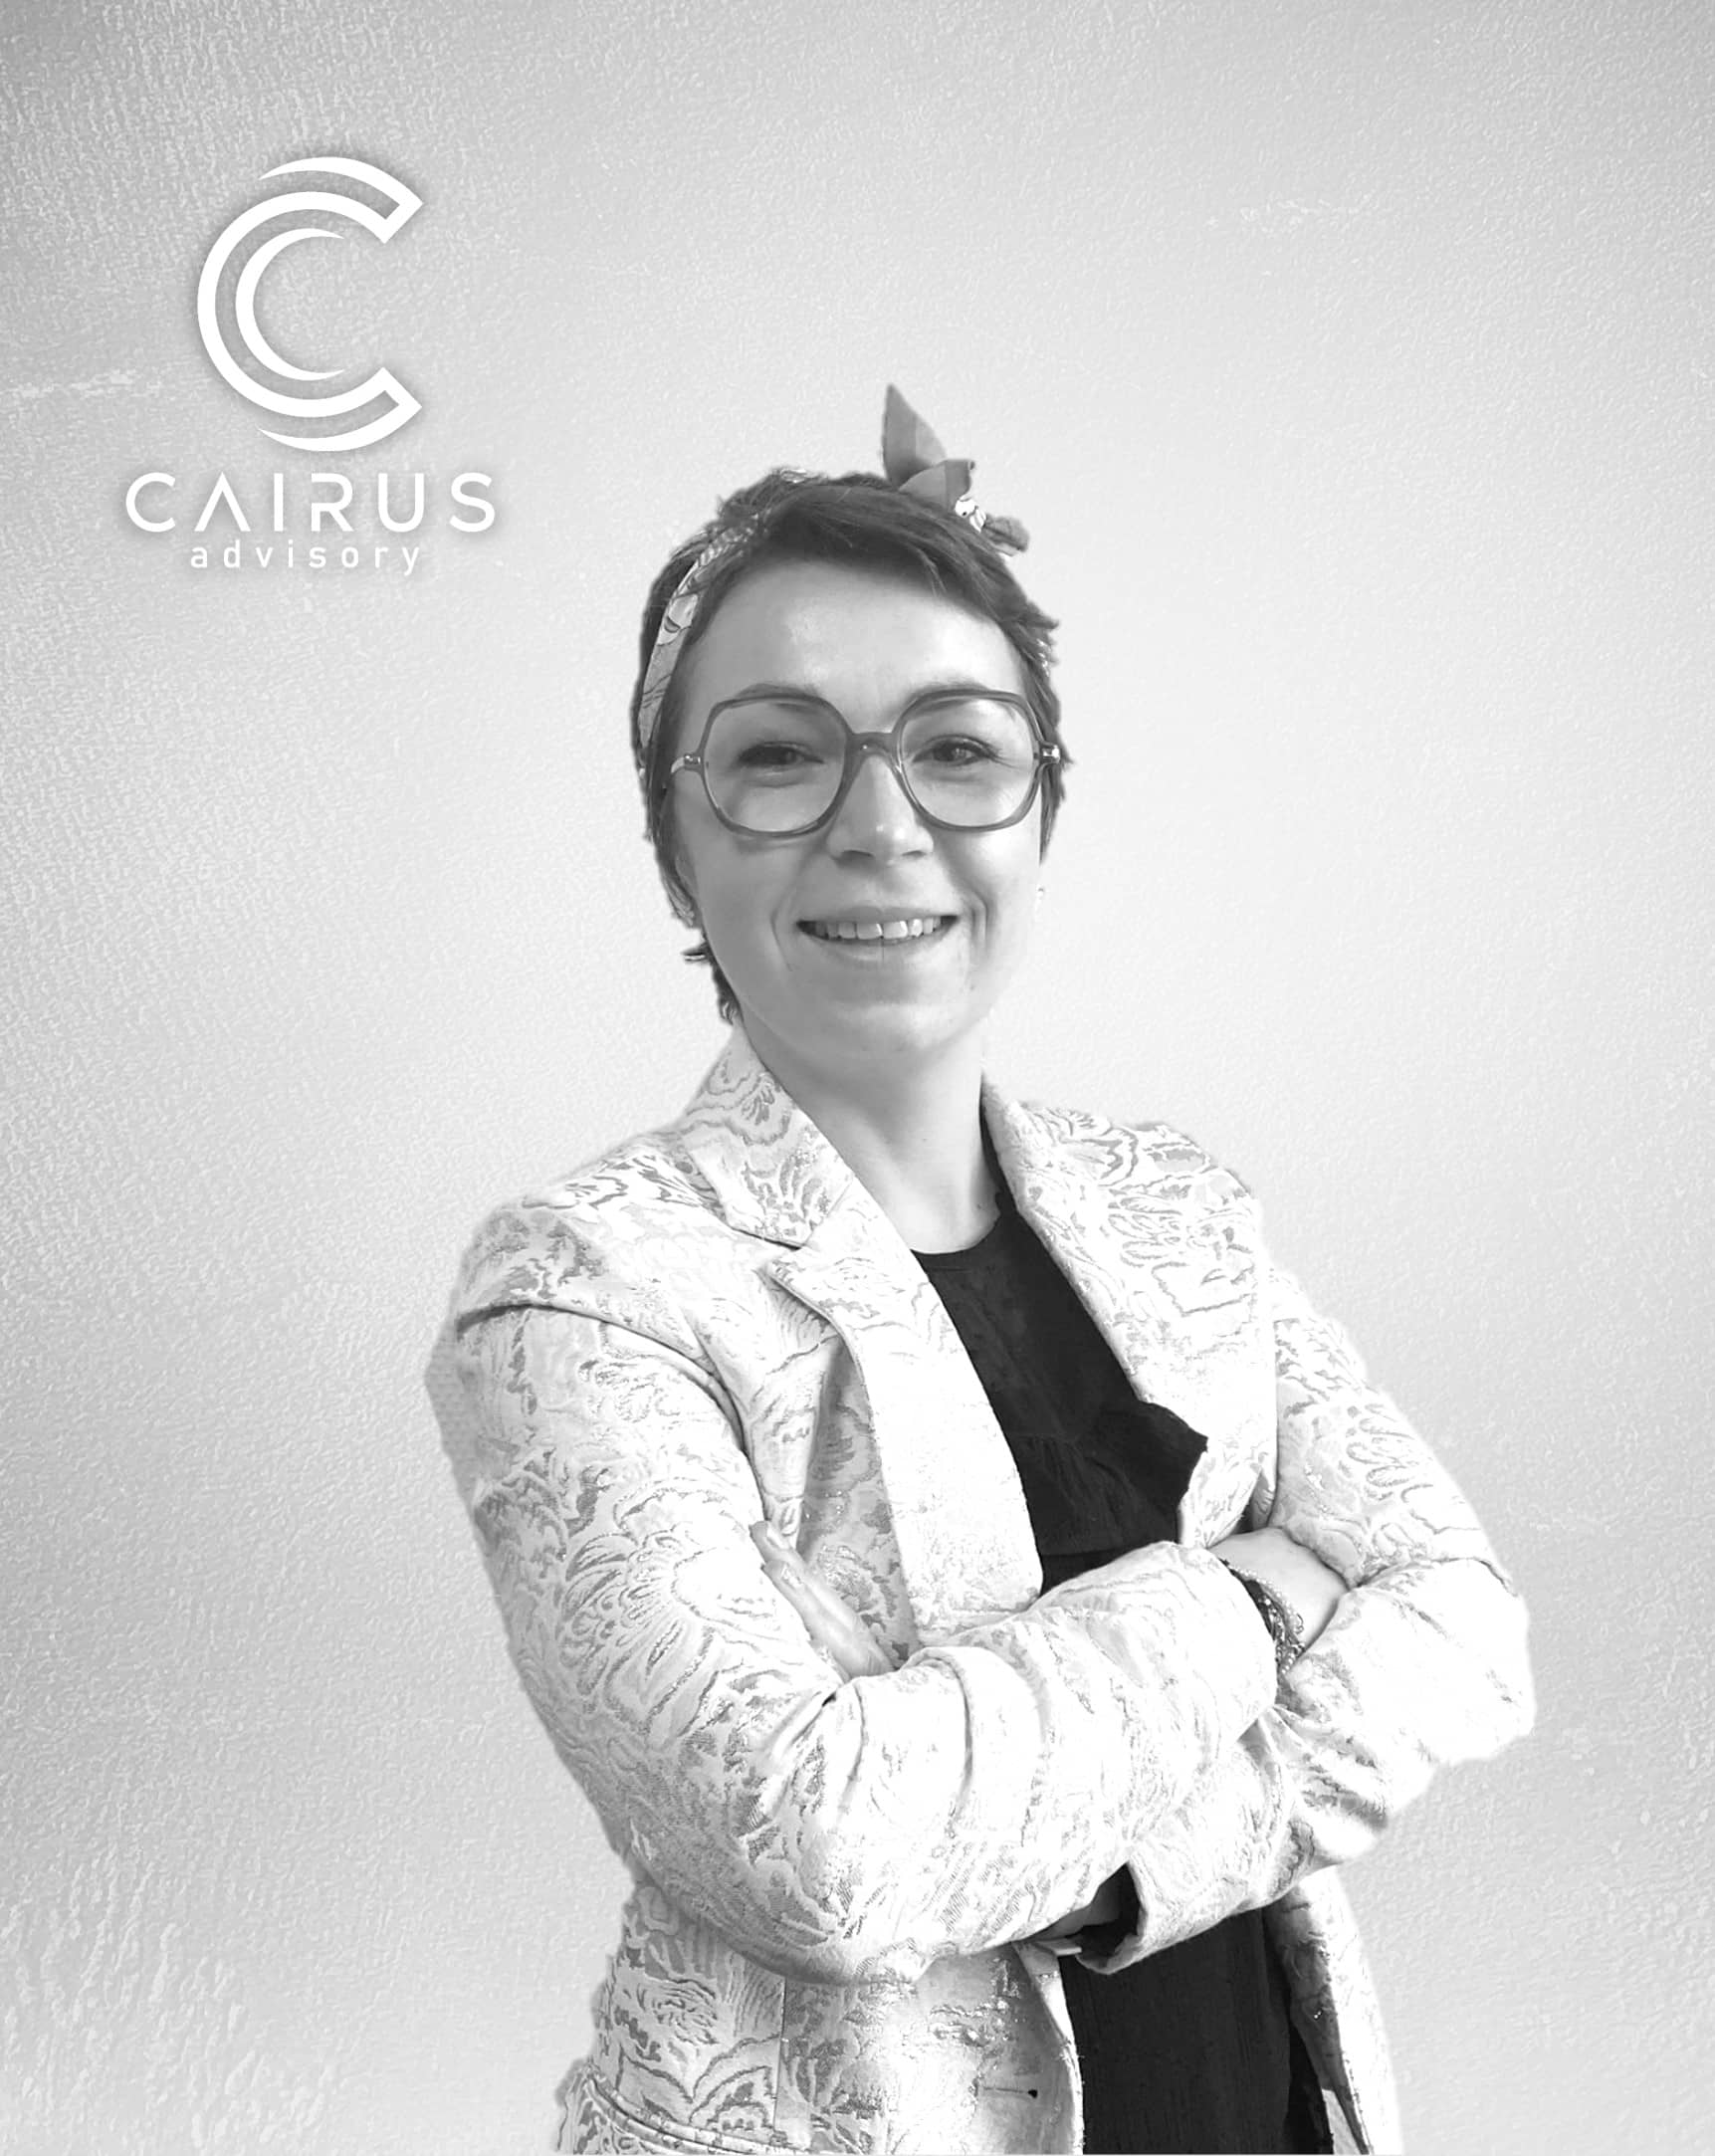 photographie de Auxana REYNAERTS, Chargée de recrutement et de développement RH chez Cairus Advisory